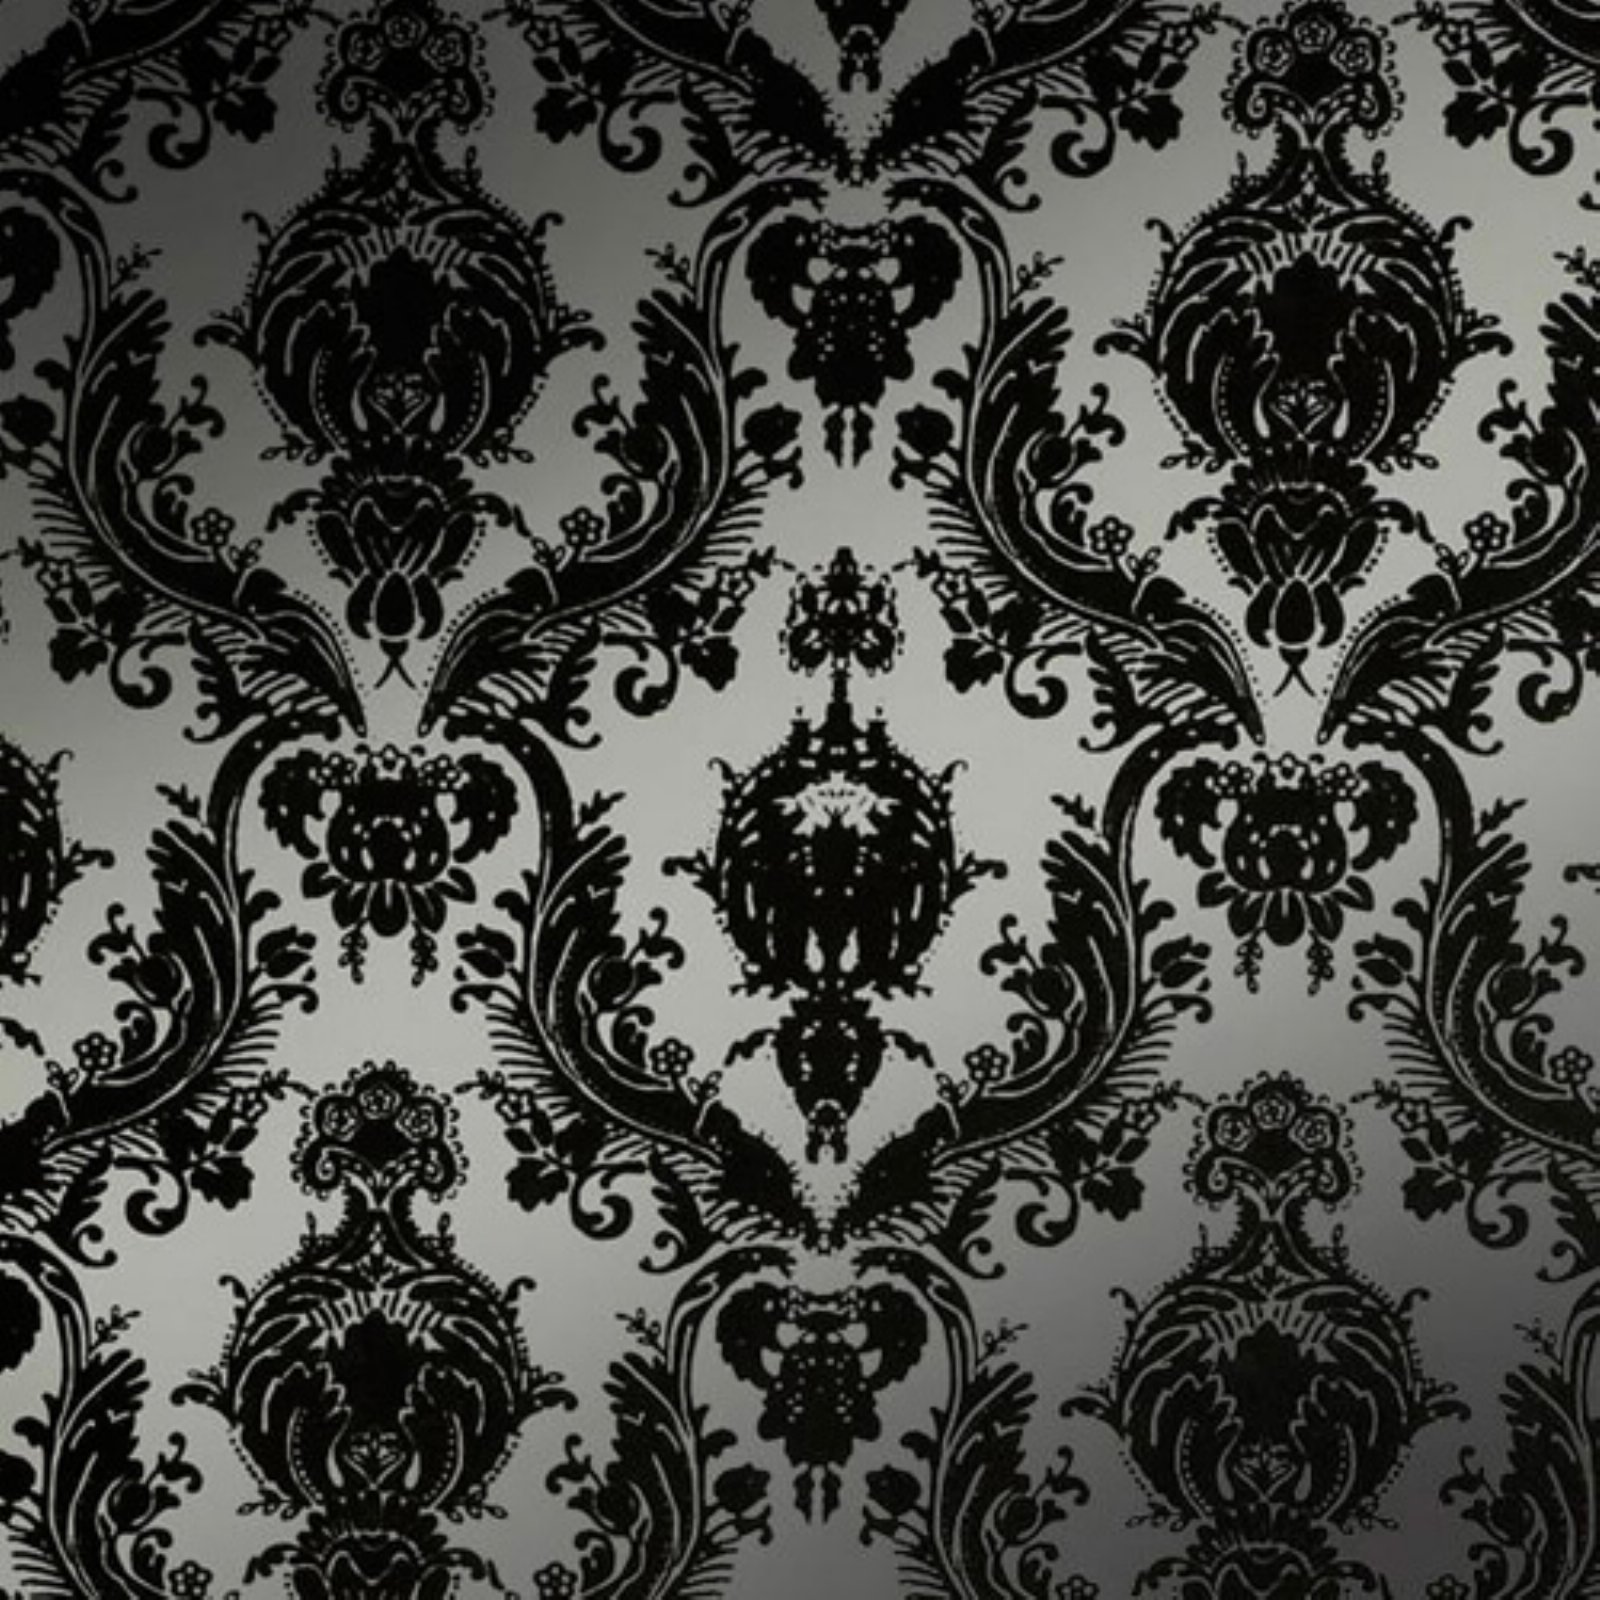 metallic damask wallpaper,pattern,black,visual arts,design,wallpaper